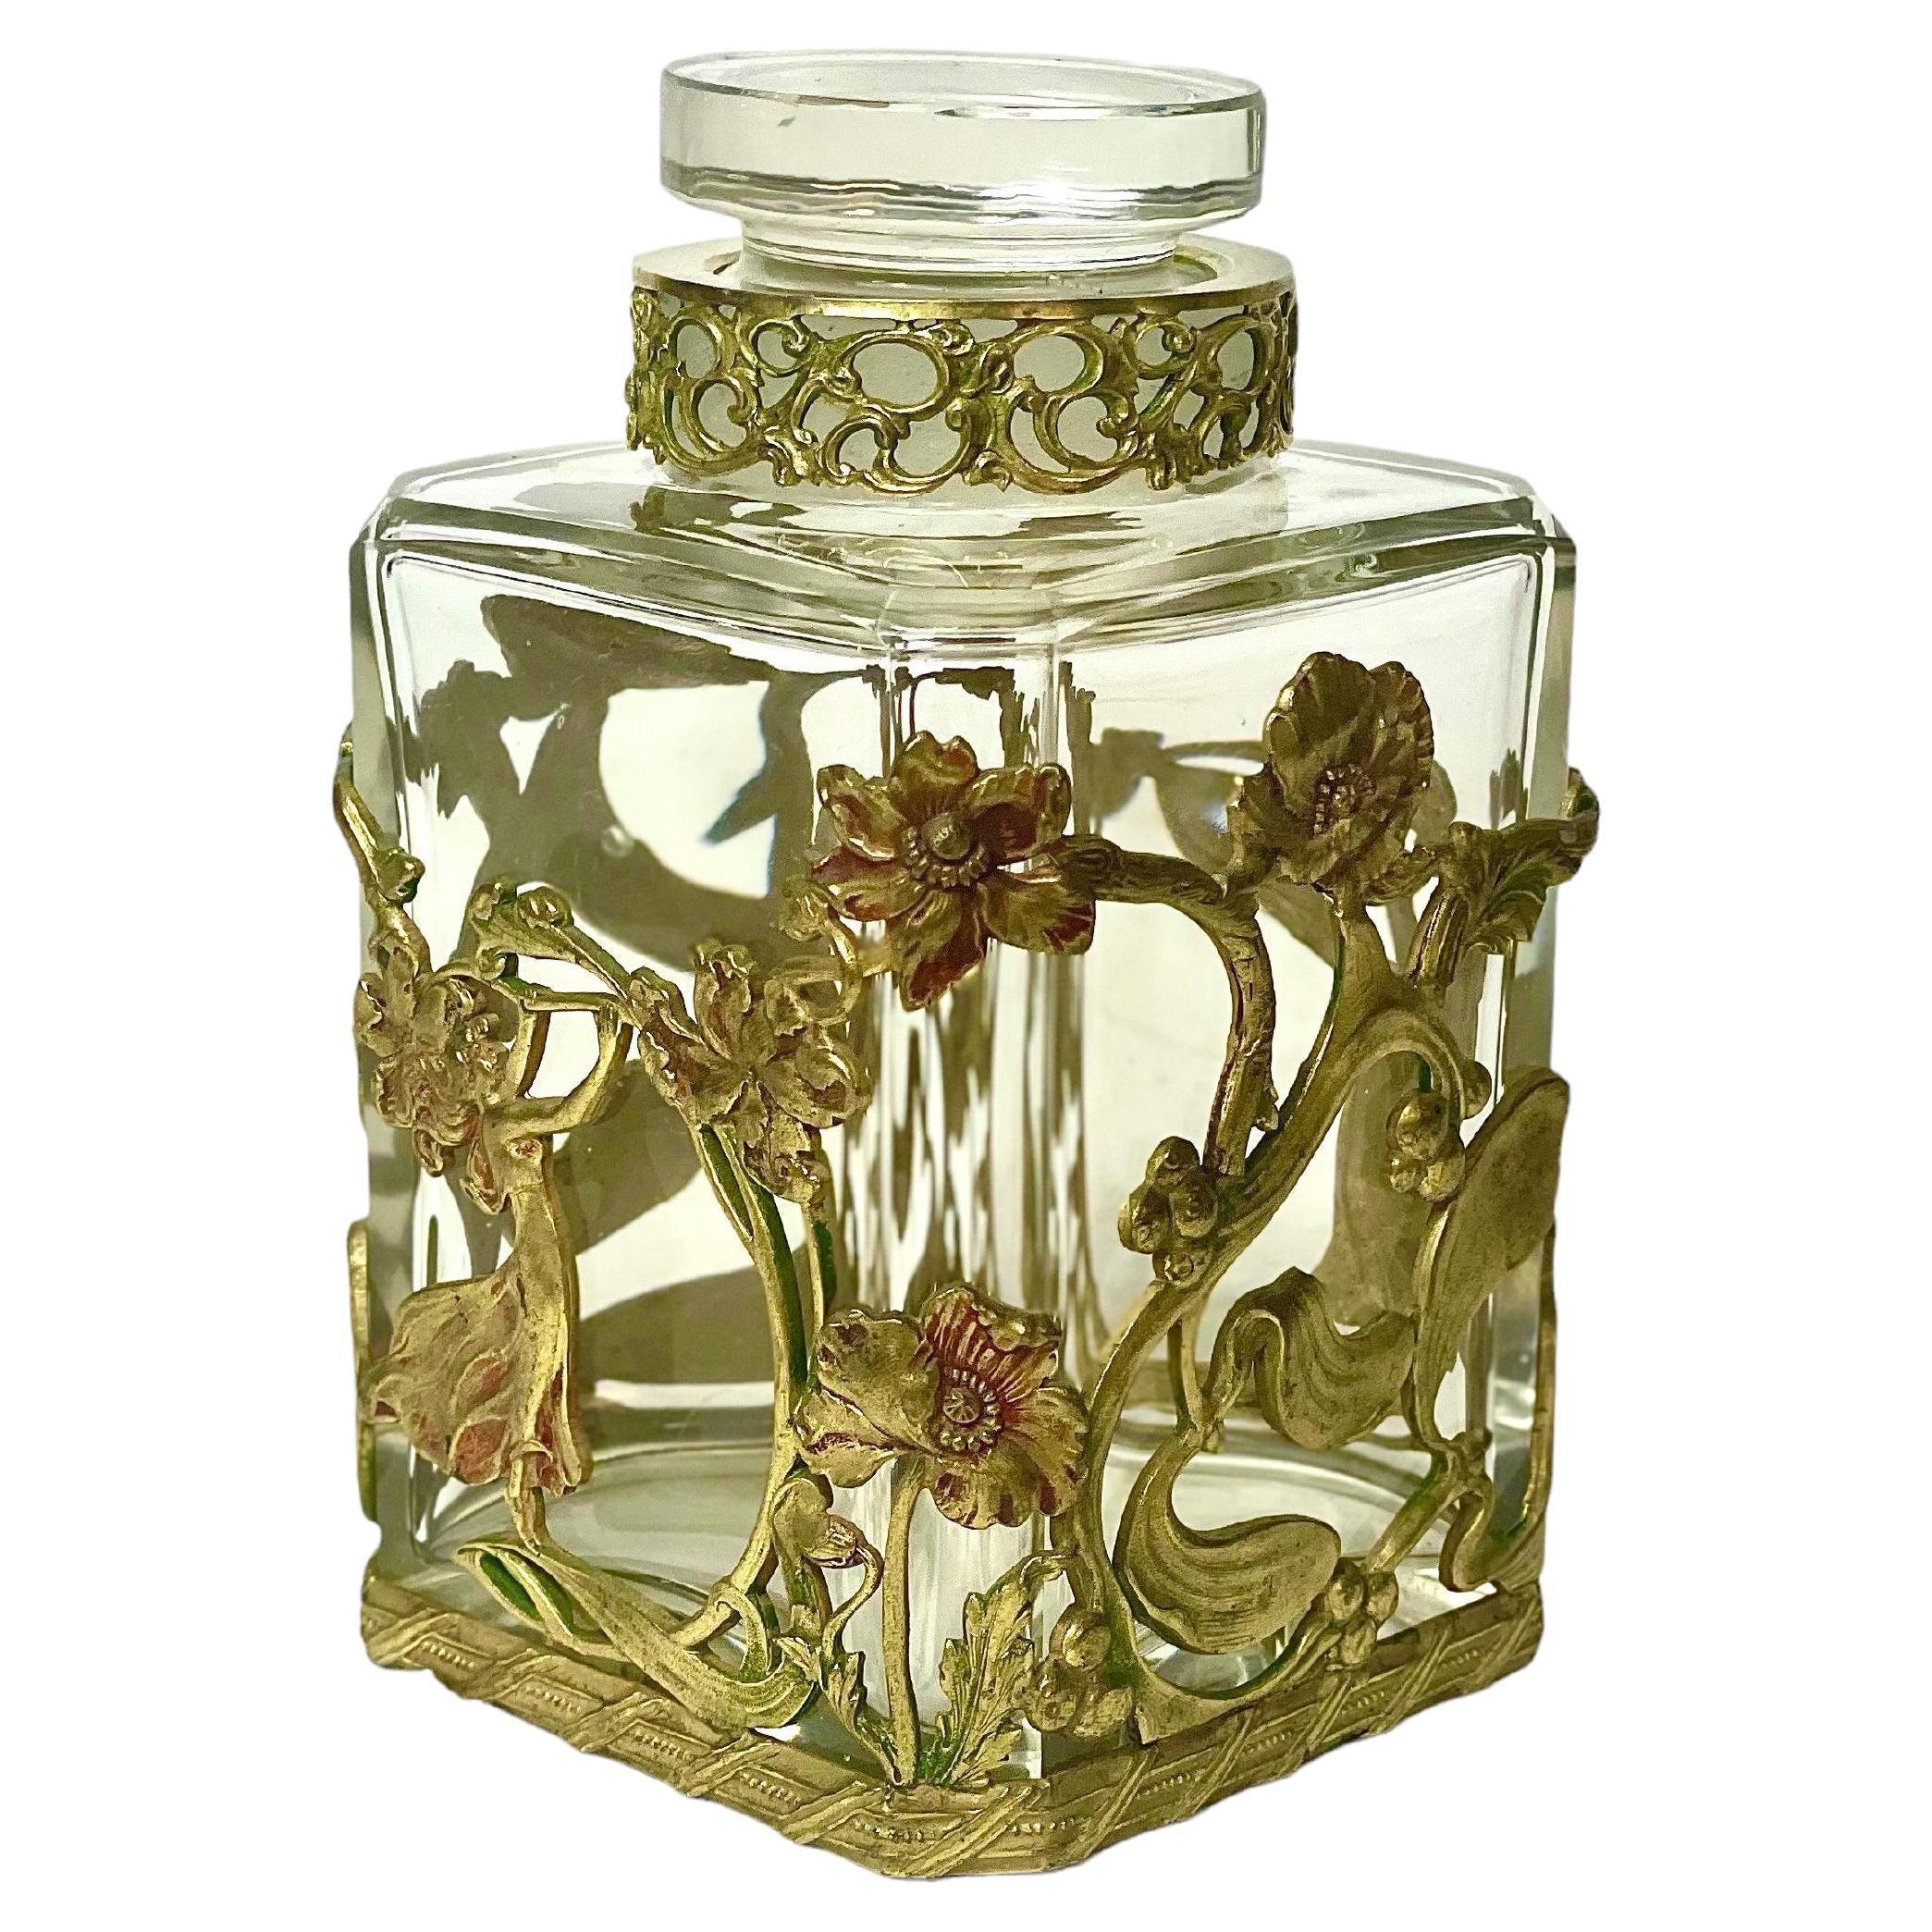 Jugendstilflasche aus Kristall und vergoldetem Messing mit Stopper aus dem 19. Jahrhundert